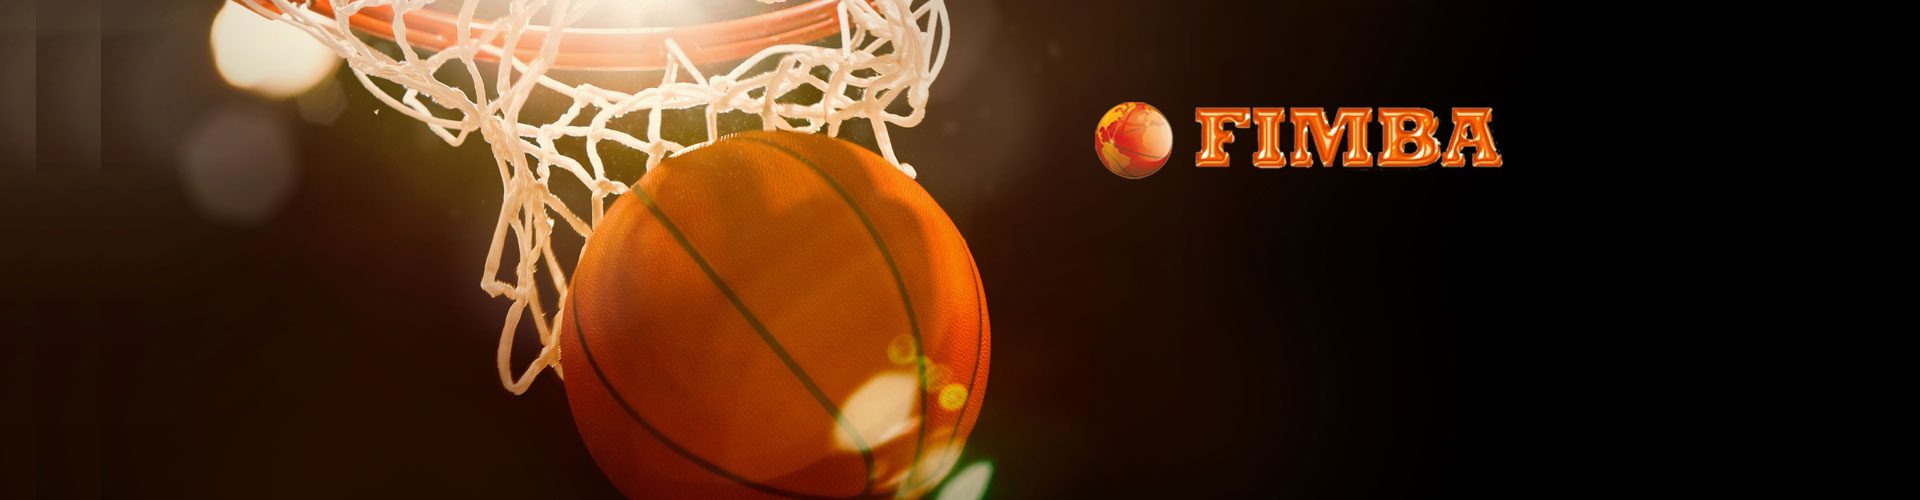 6° giorno Mondiali di Basket Montecatini Terme – tutte le foto